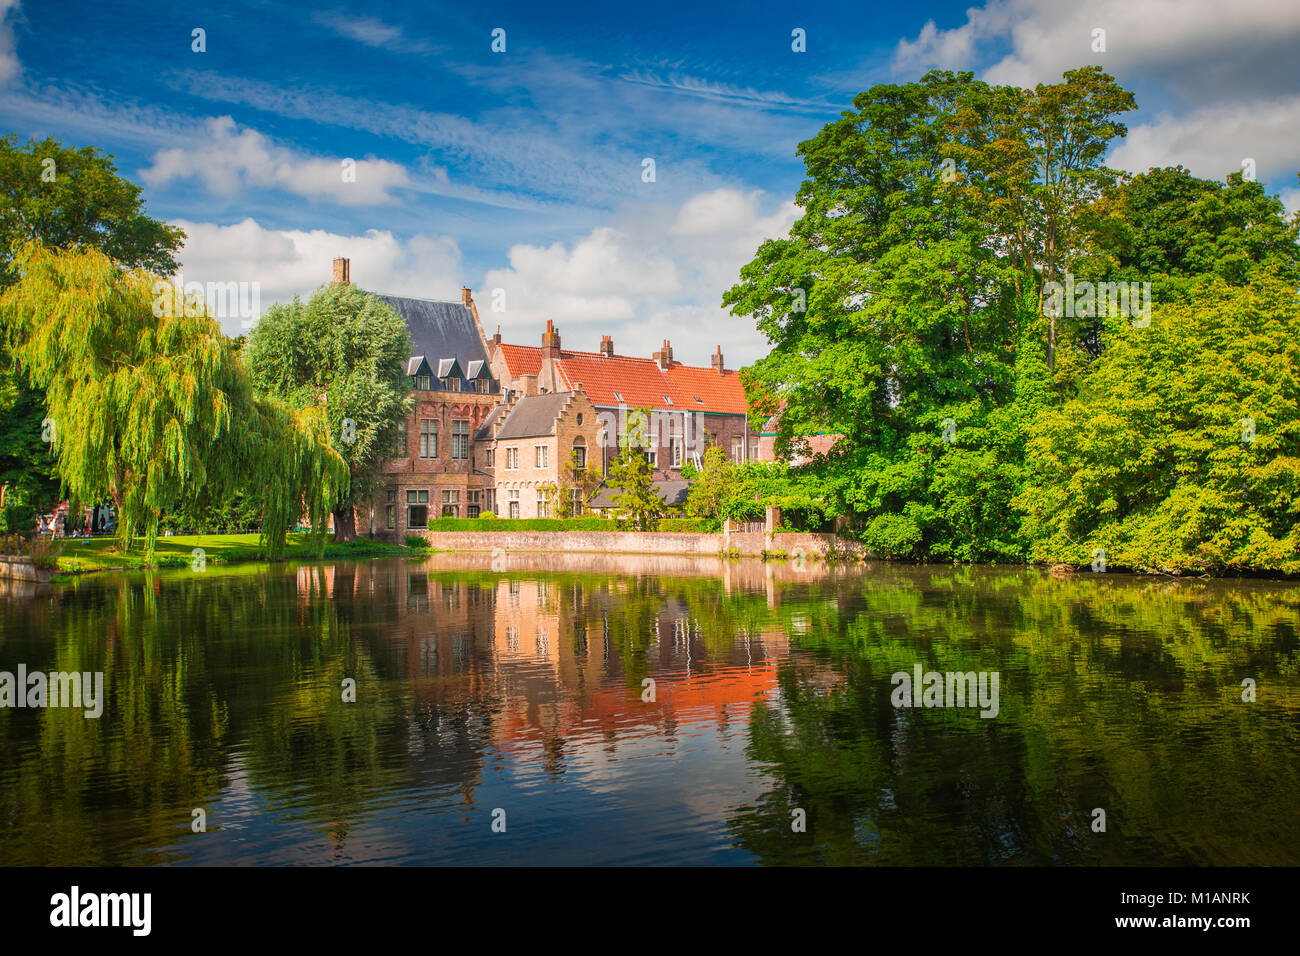 Brugge sonnigen Stadtbild. Alte Gebäude in Brügge und grüne Bäume im See spiegeln. Historischen Zentrum von Europa. Stockfoto